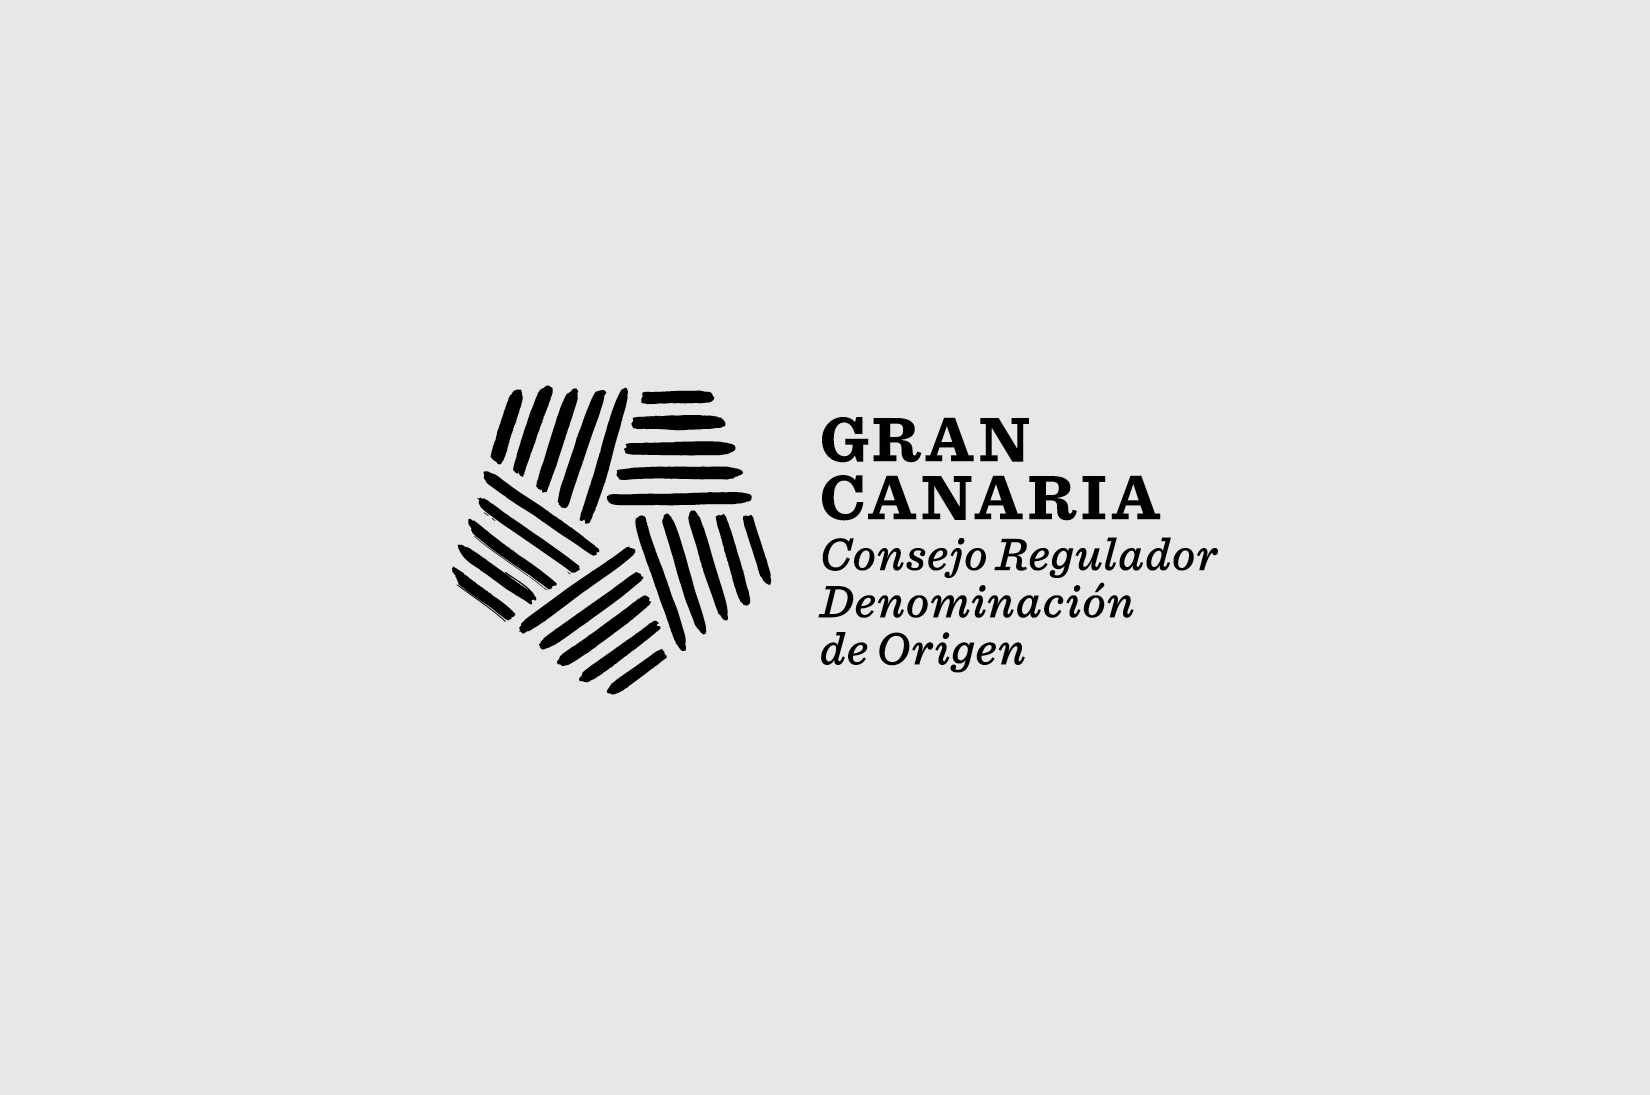 Denominación de Origen Gran Canaria